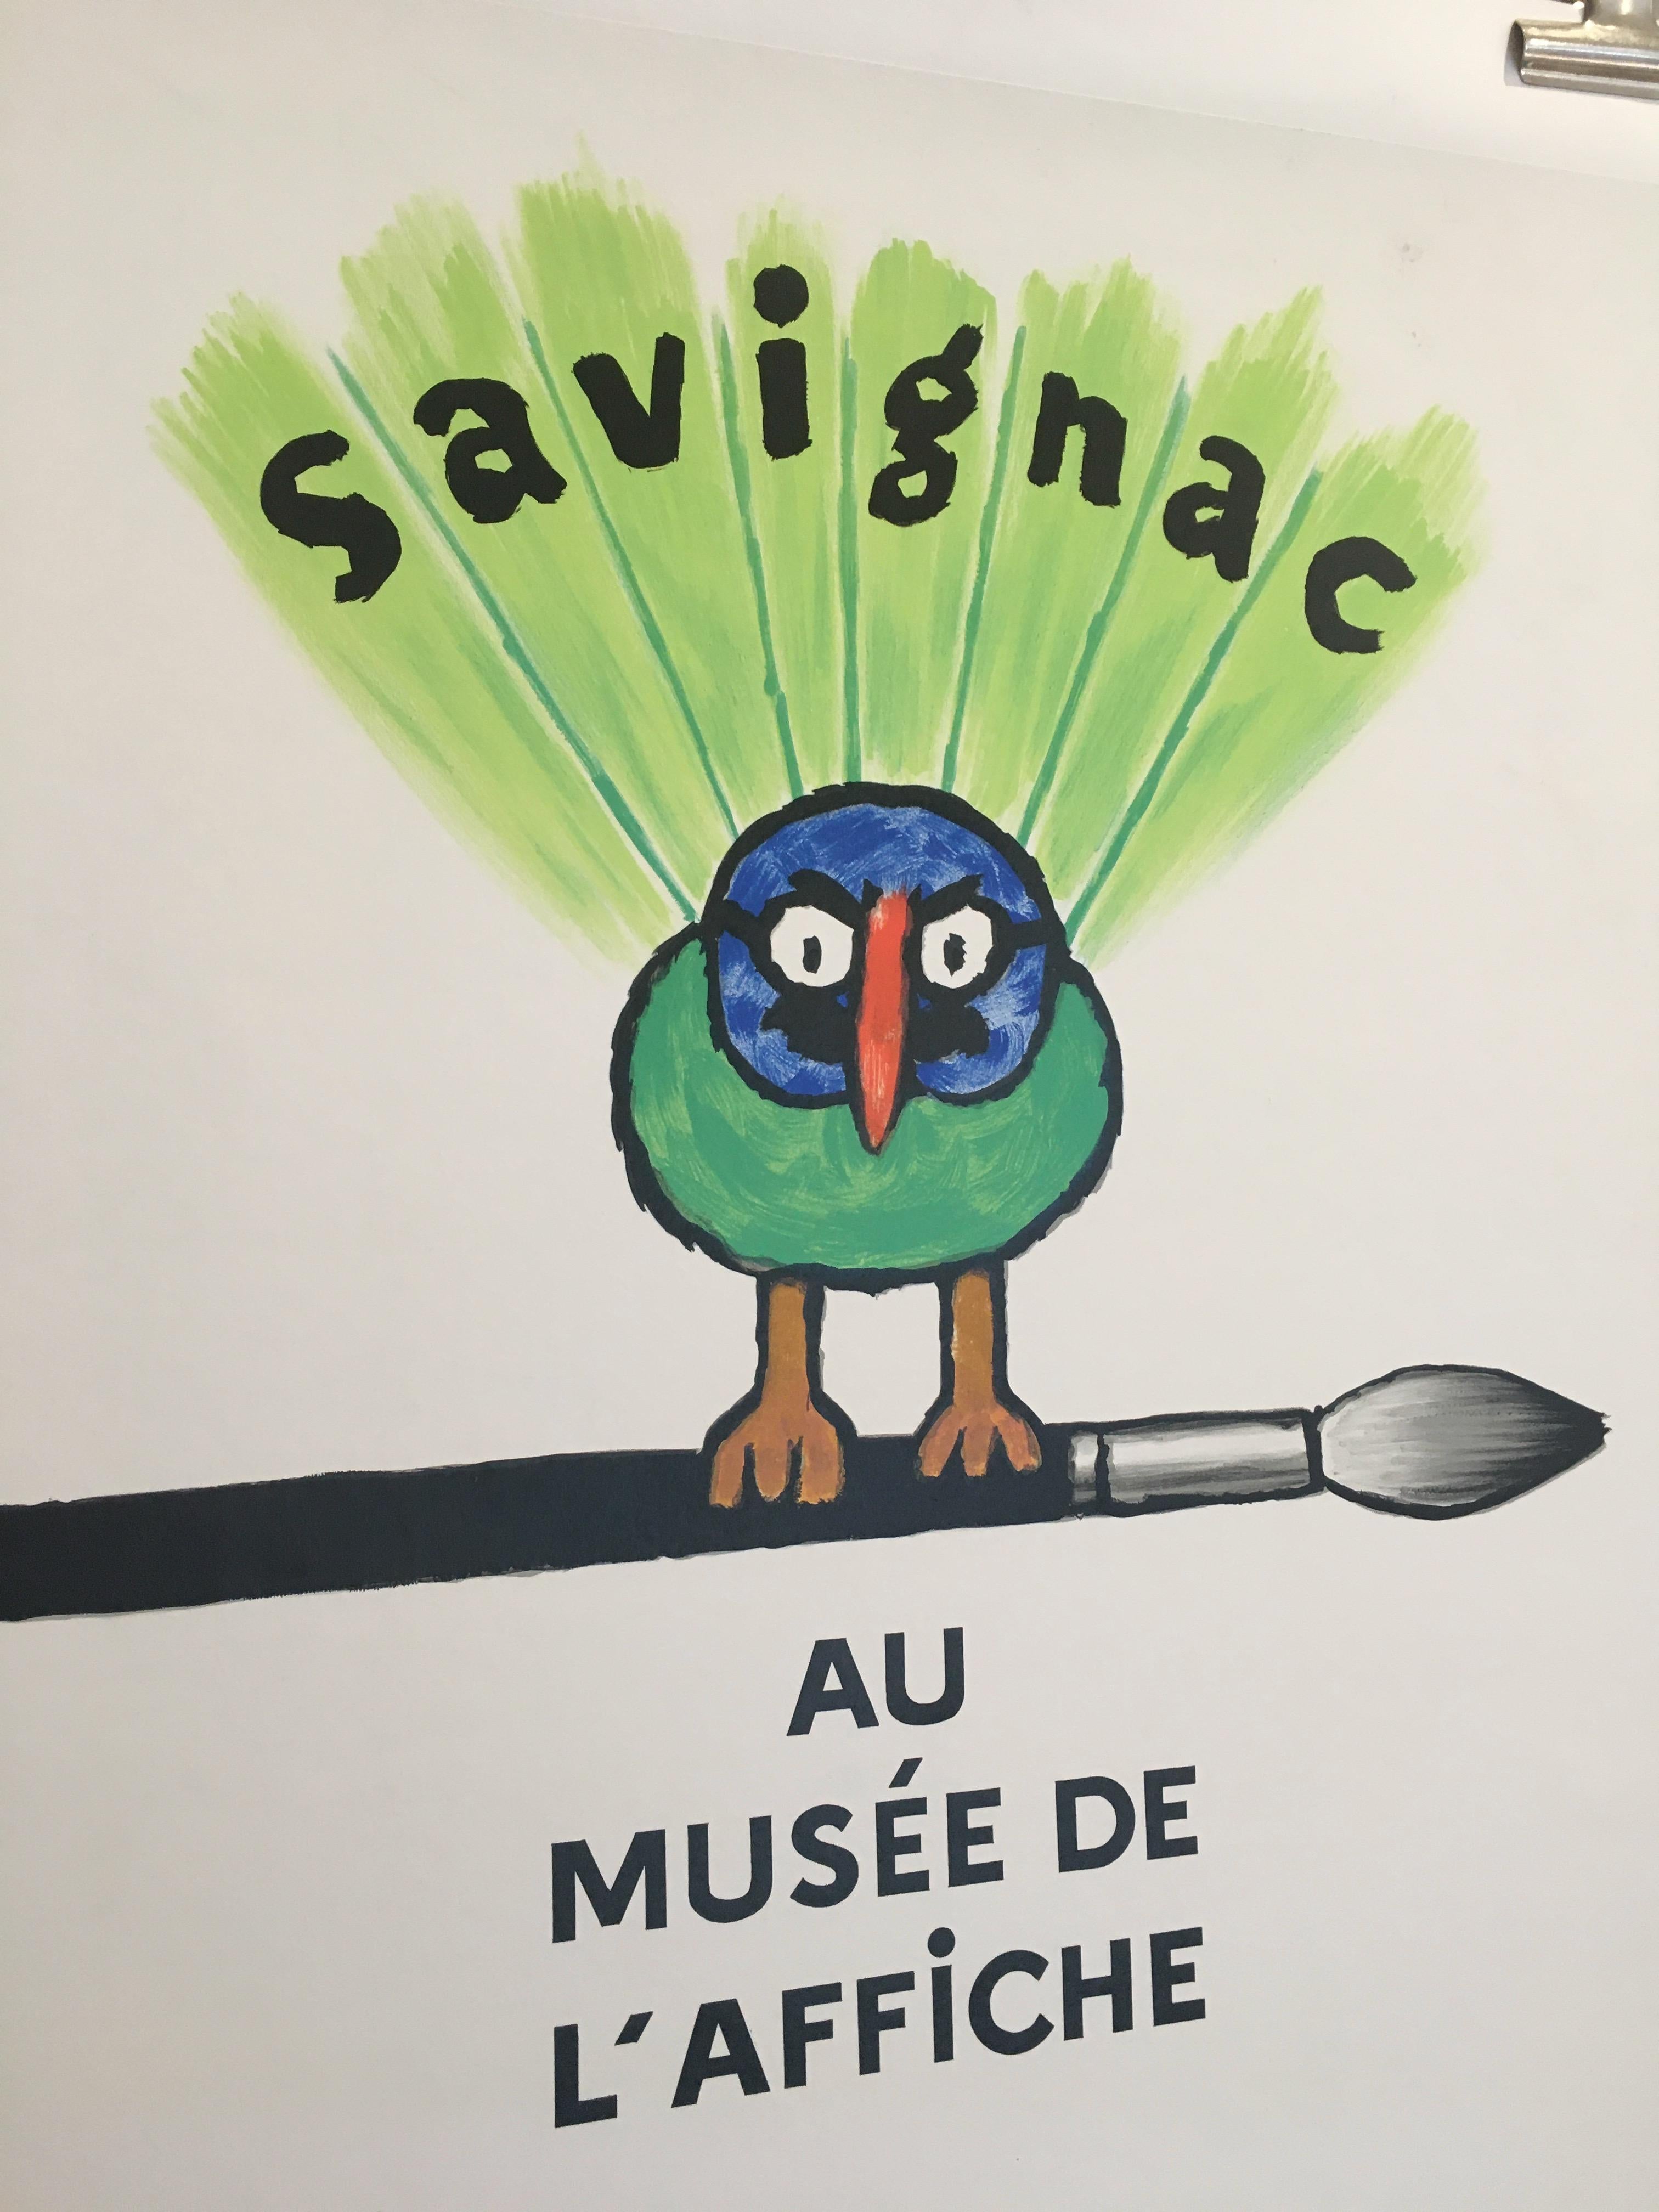 Savignac Bird 'Au Musée De L'Affich' affiche d'exposition originale française d'époque

